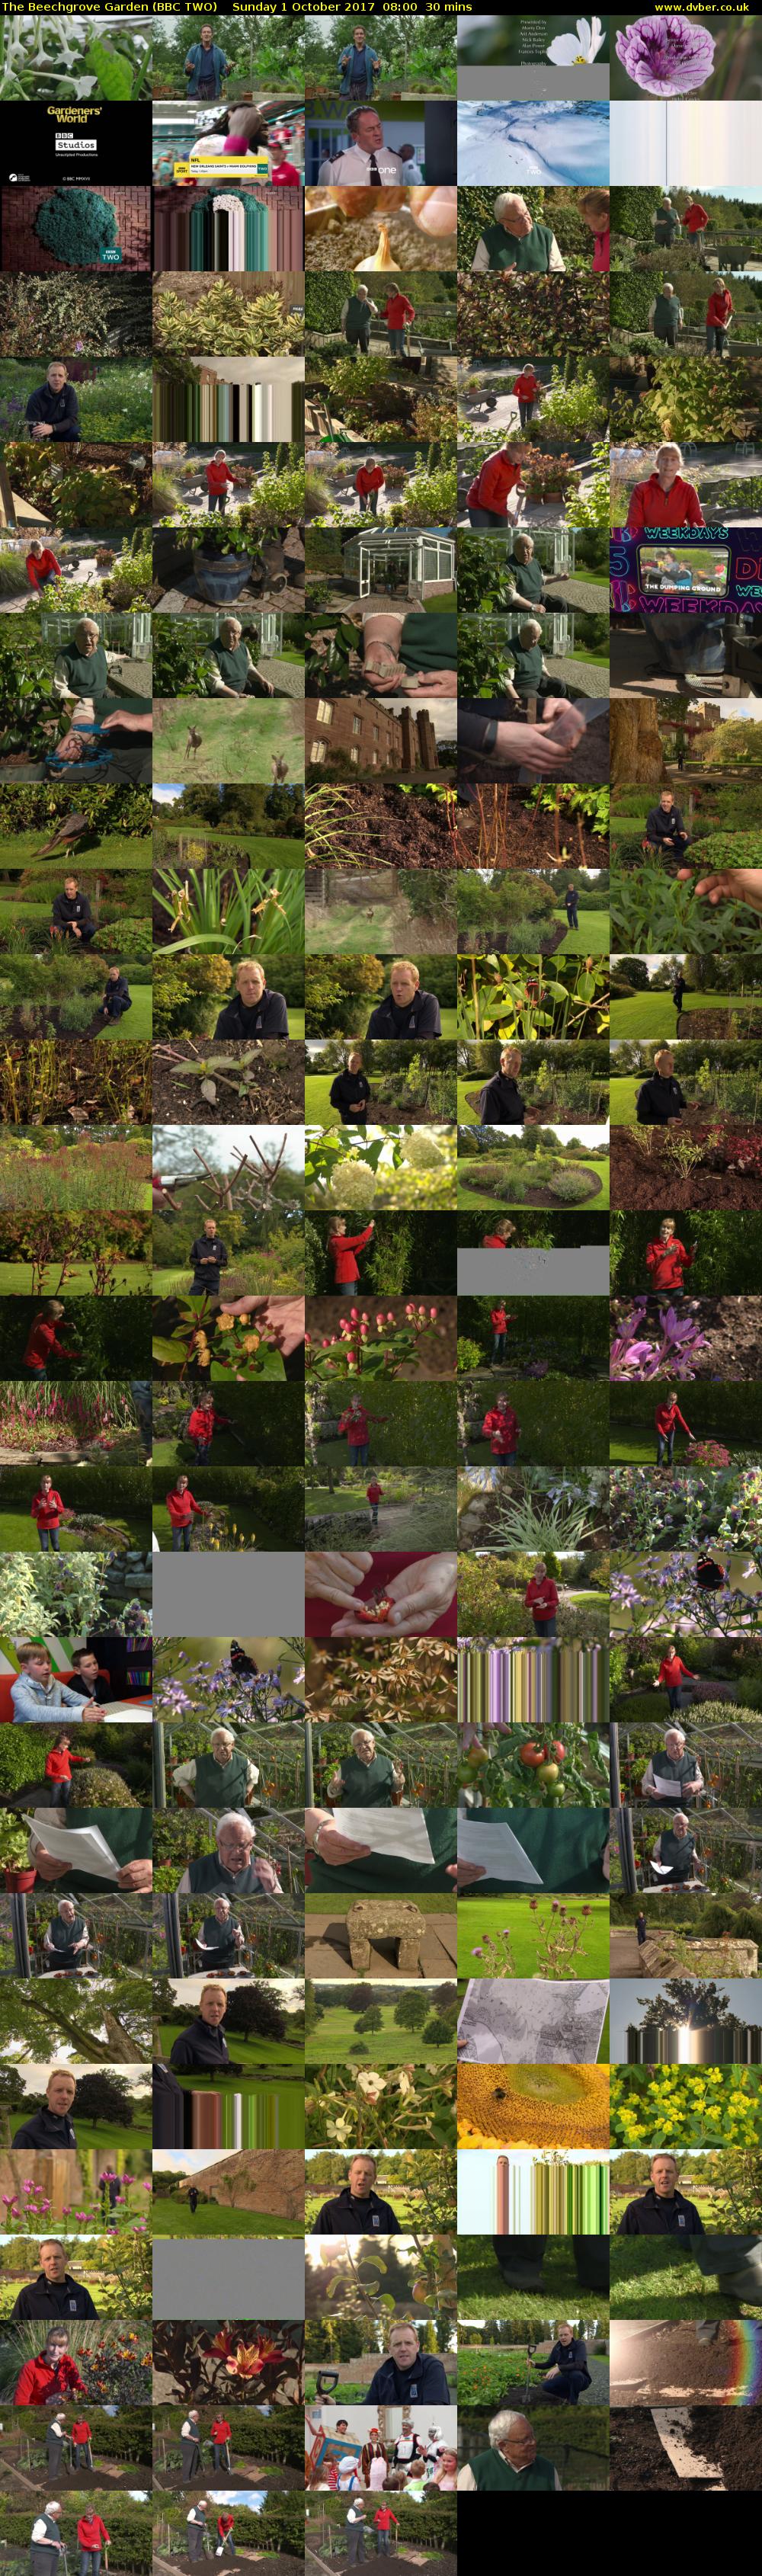 The Beechgrove Garden (BBC TWO) Sunday 1 October 2017 08:00 - 08:30